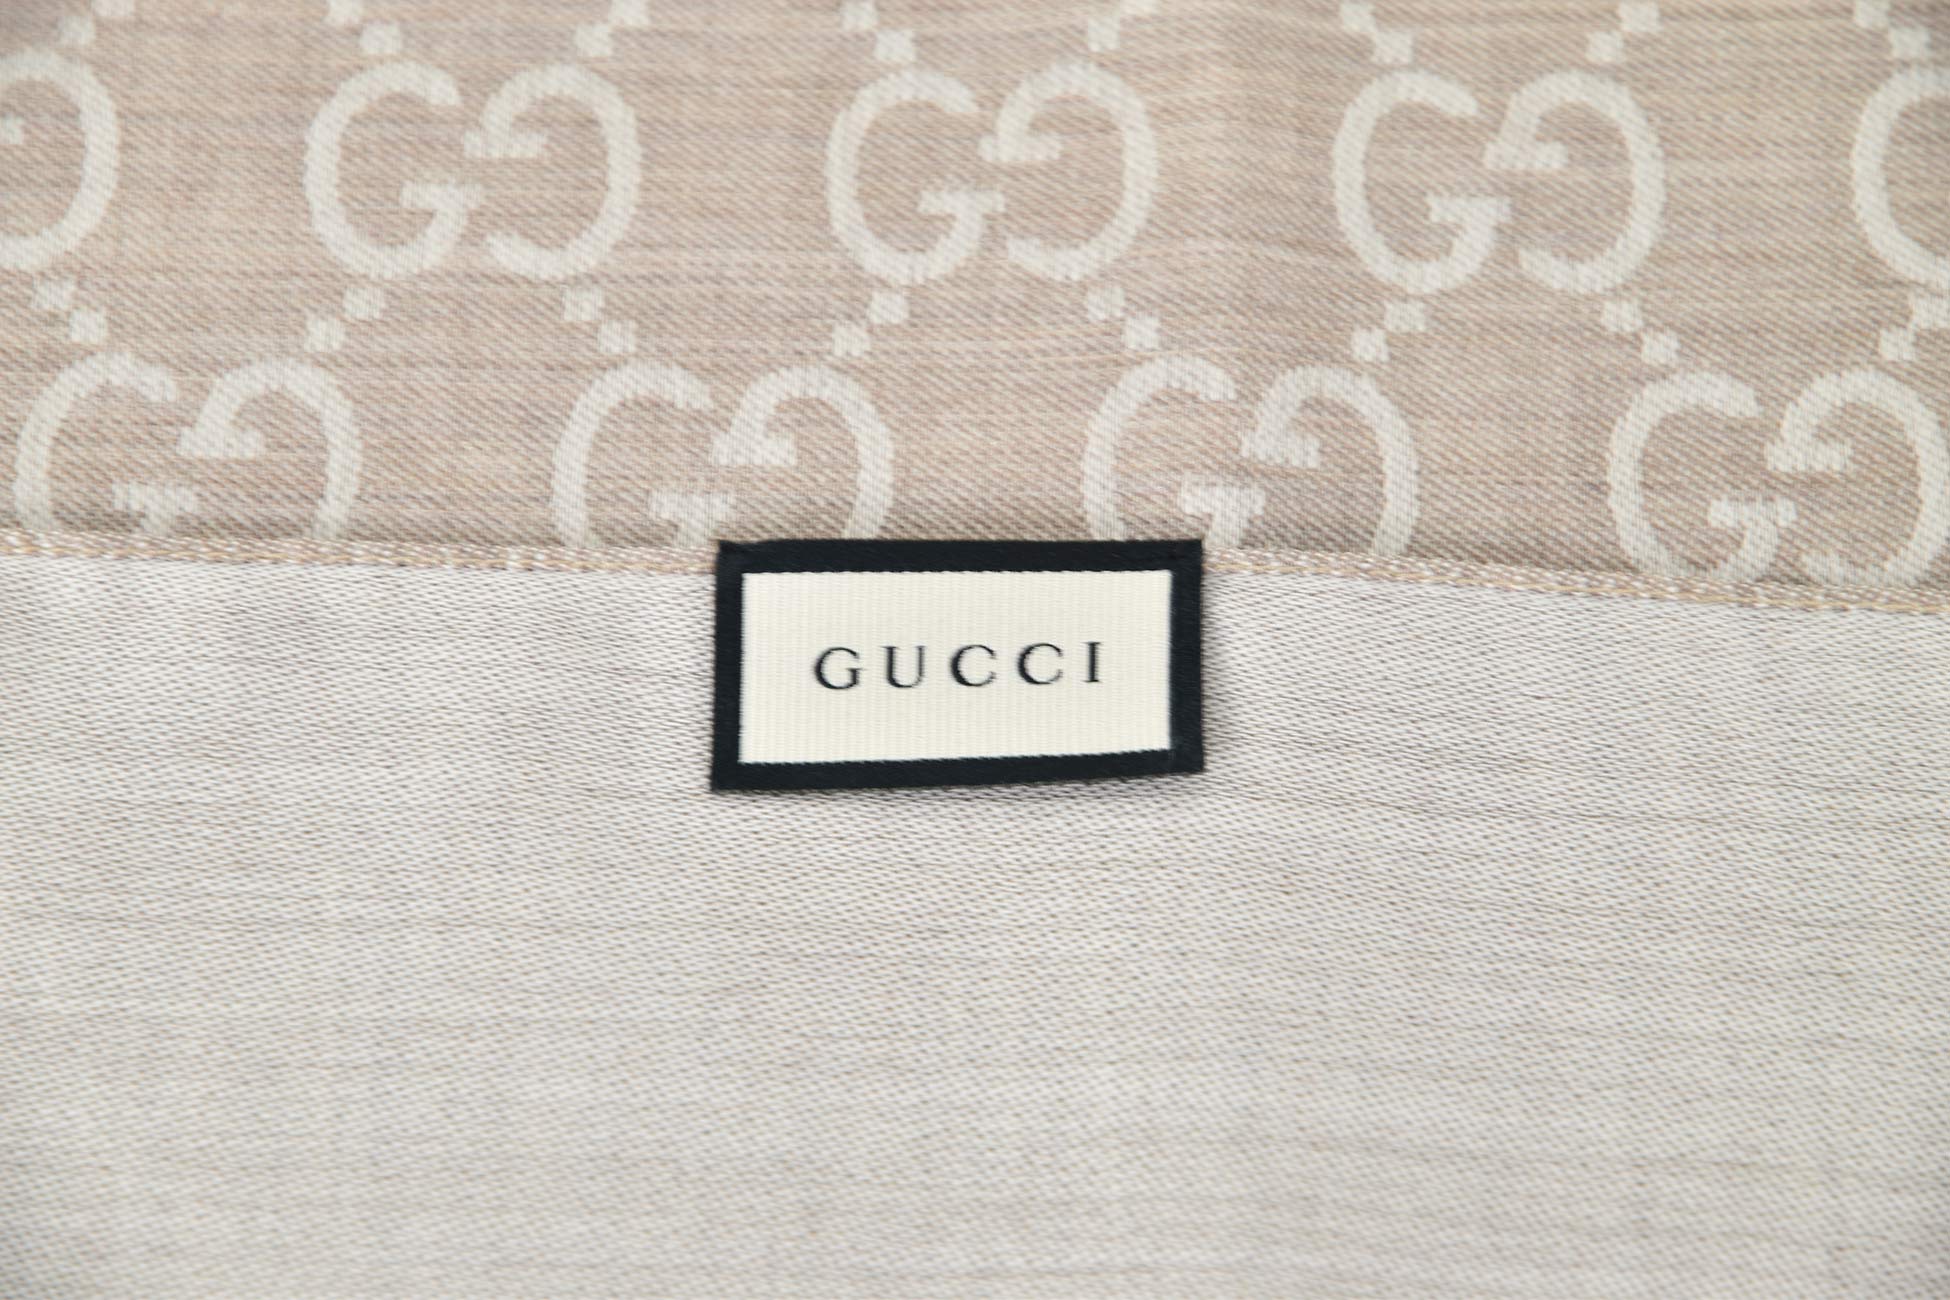 Gucci Scialle Unisex Beige e Bianco Logato Lana e Seta Mod. 165904 3G646 9500